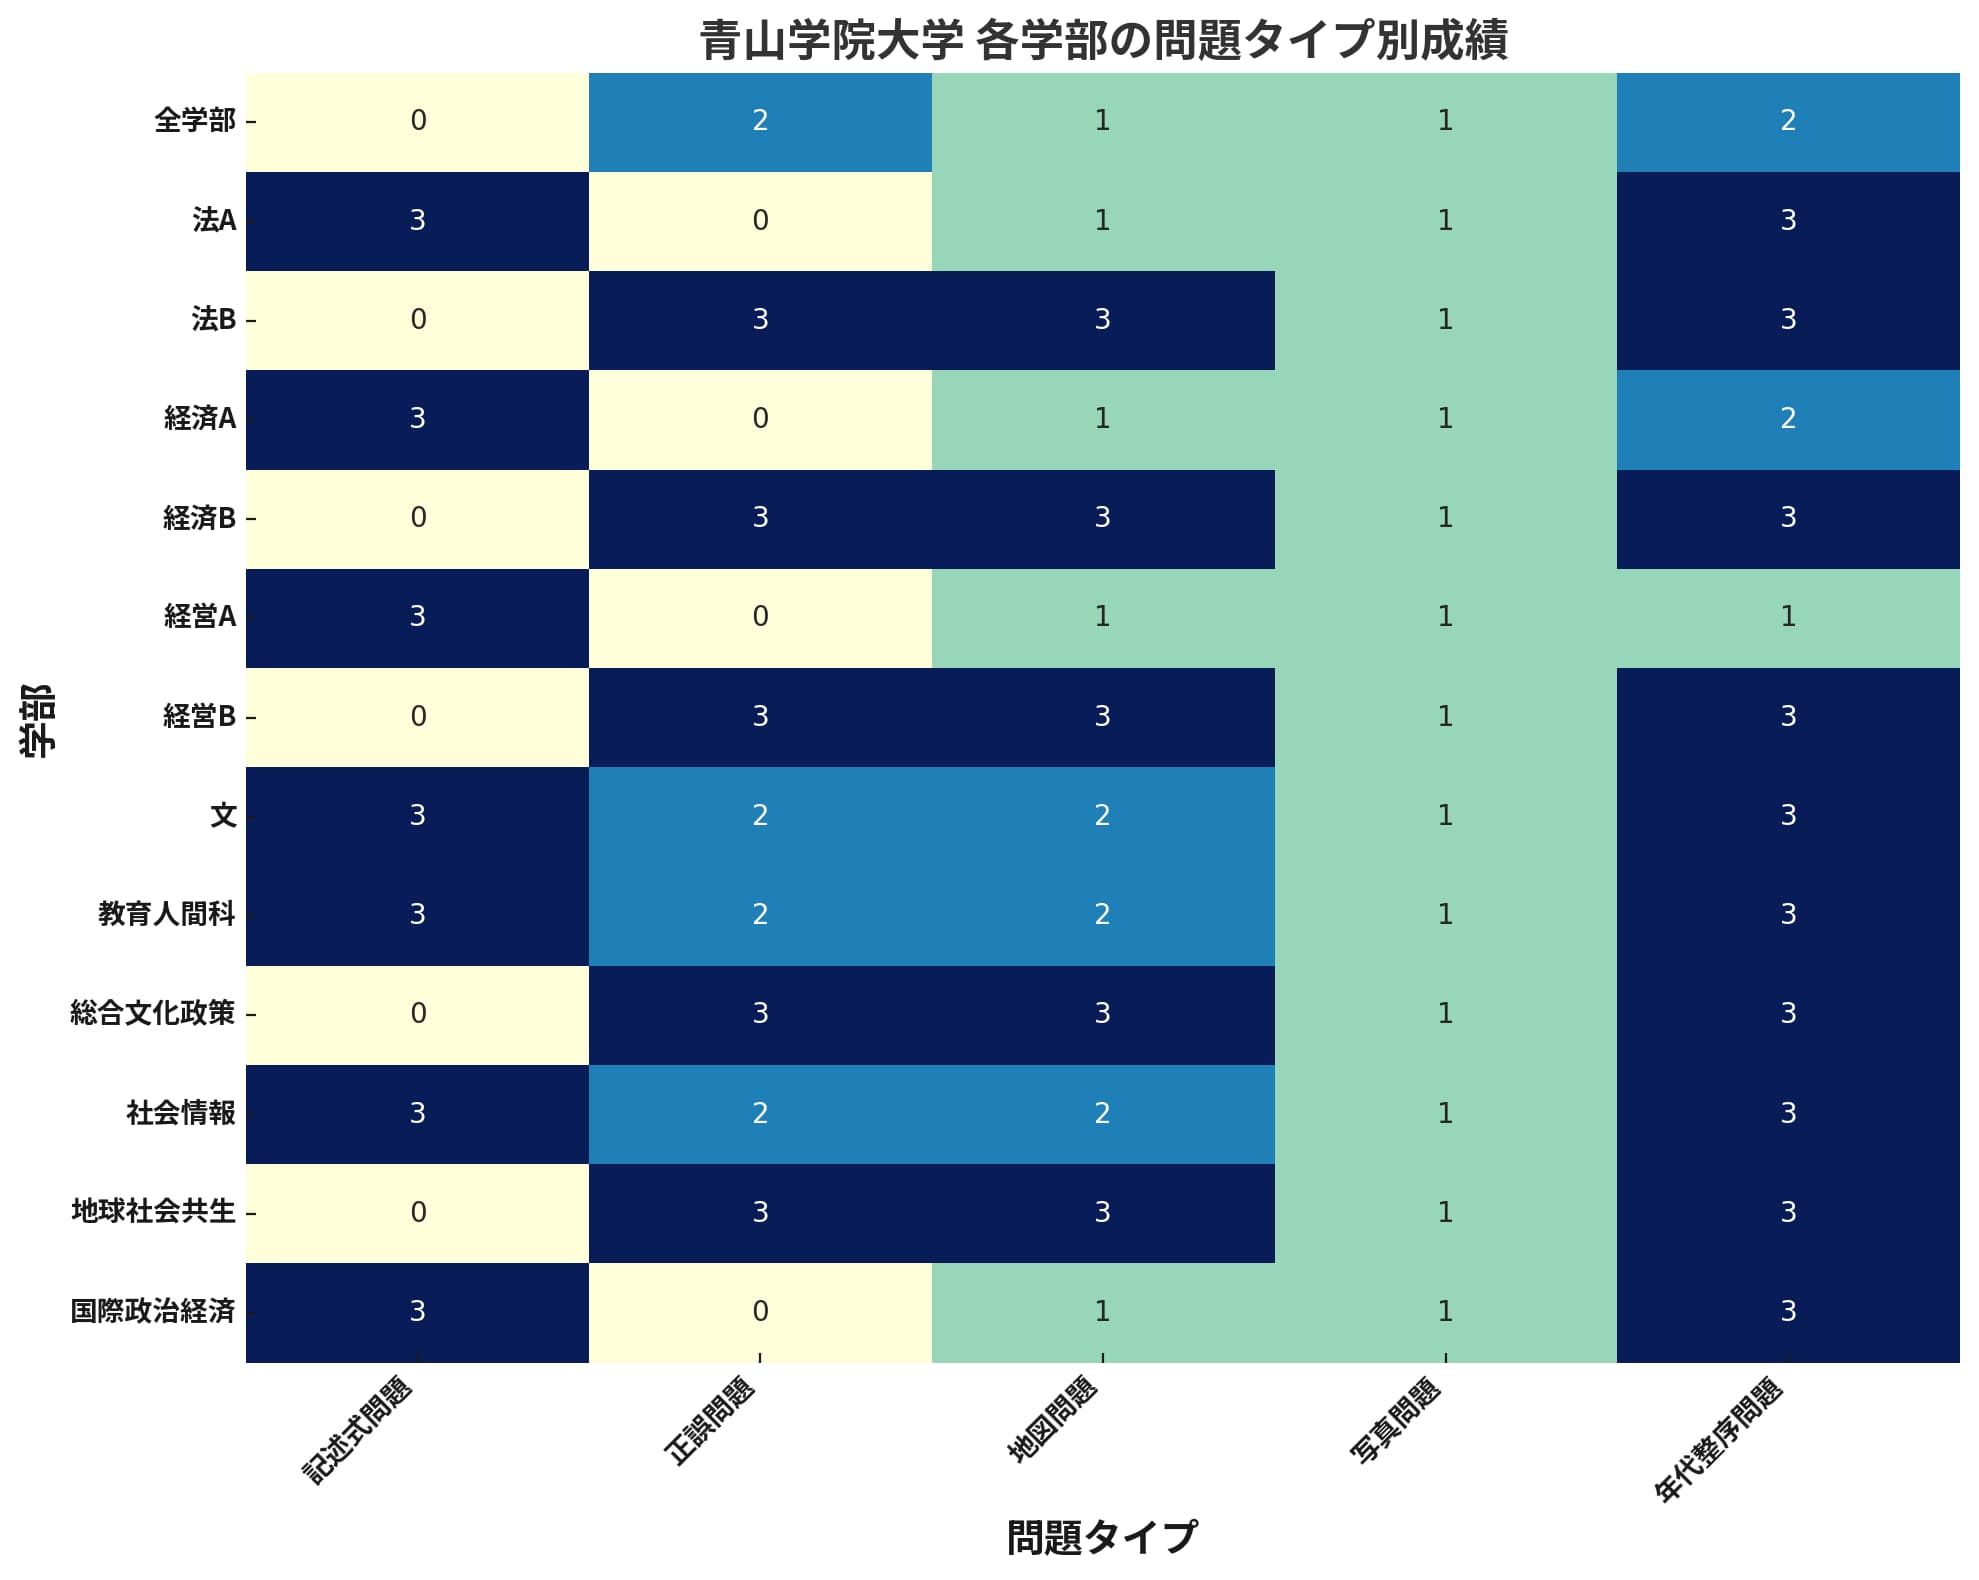 青山学院大学の各学部における日本史を示すヒートマップ